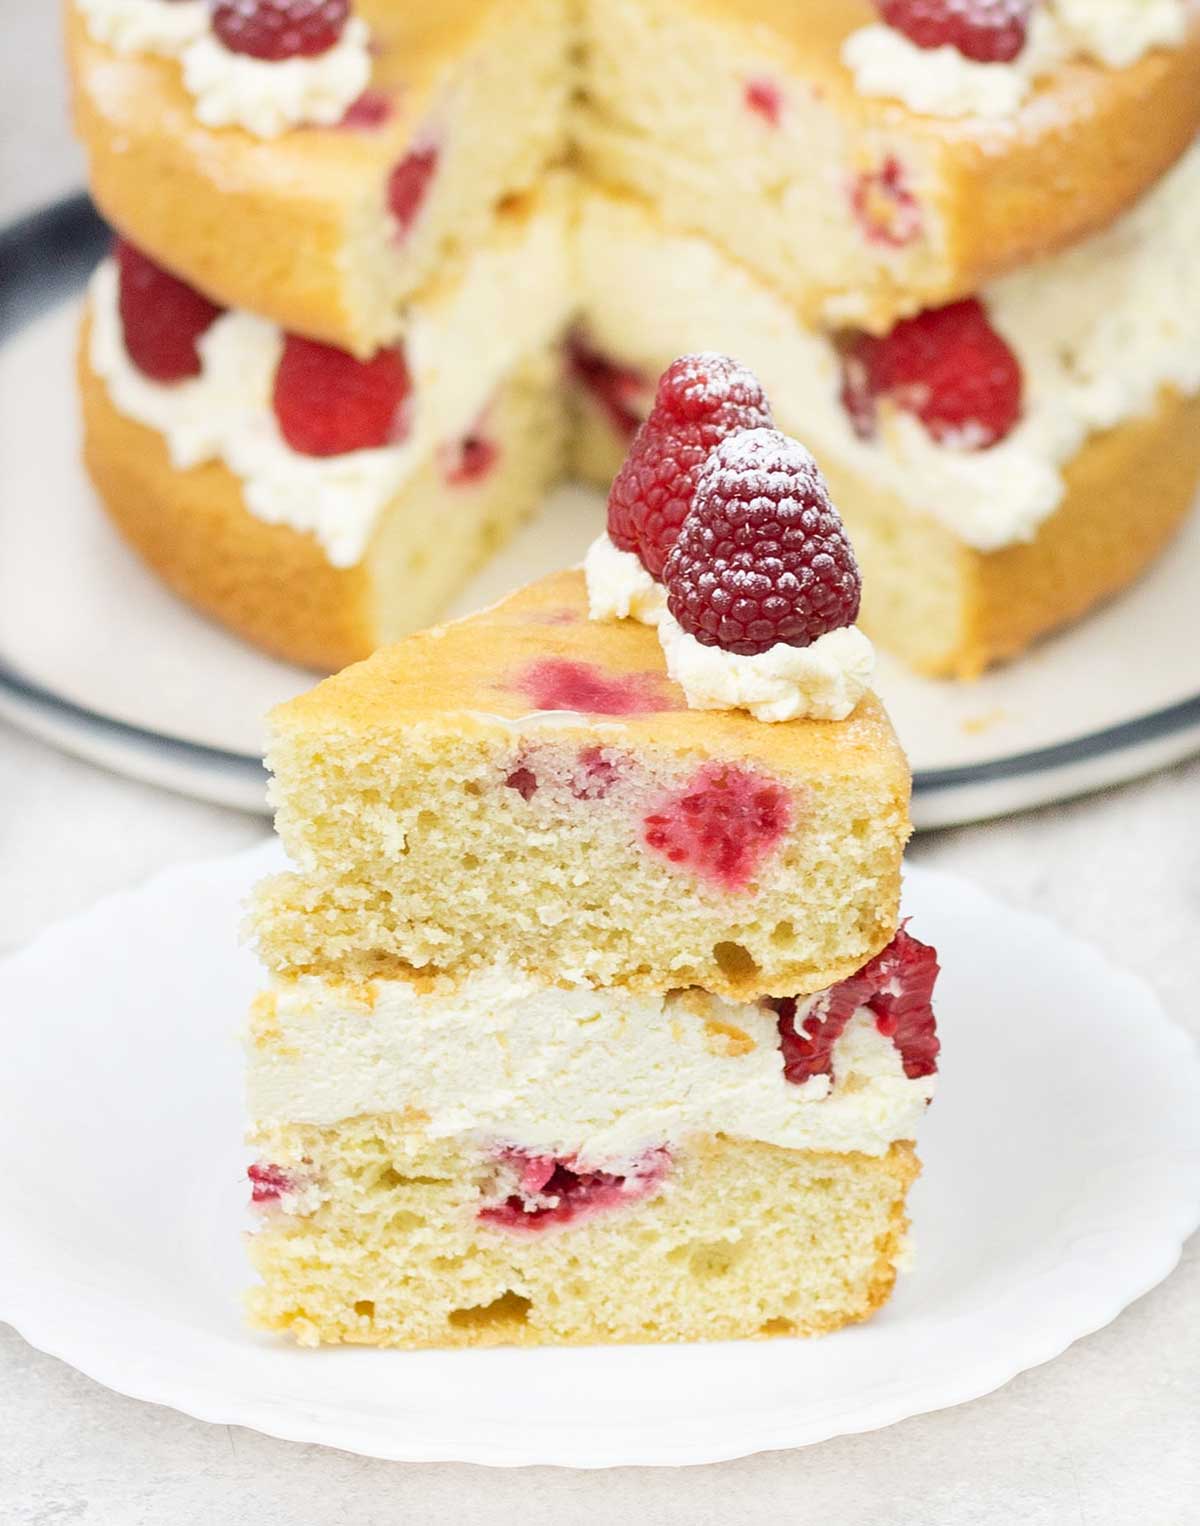 A slice of raspberry sponge cake.